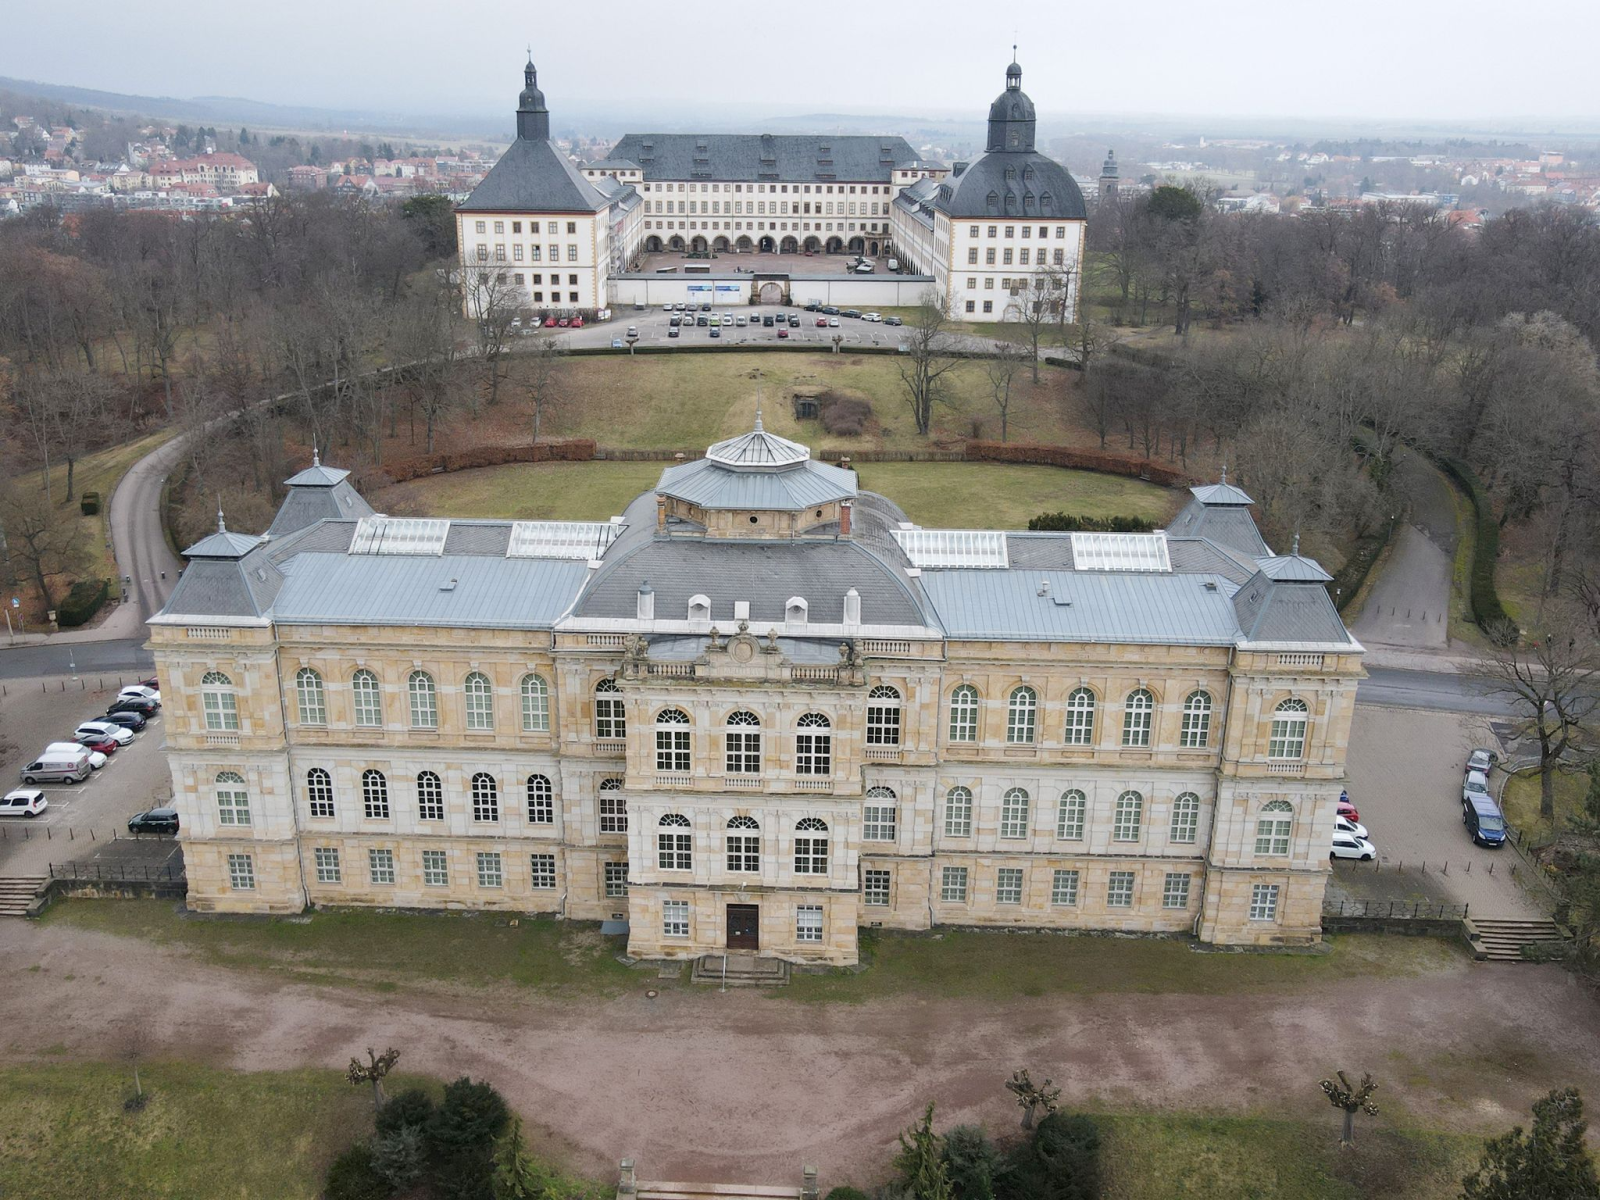 Das Herzogliche Museum im Vordergrund und Schloss Friedenstein im Hintergrund.